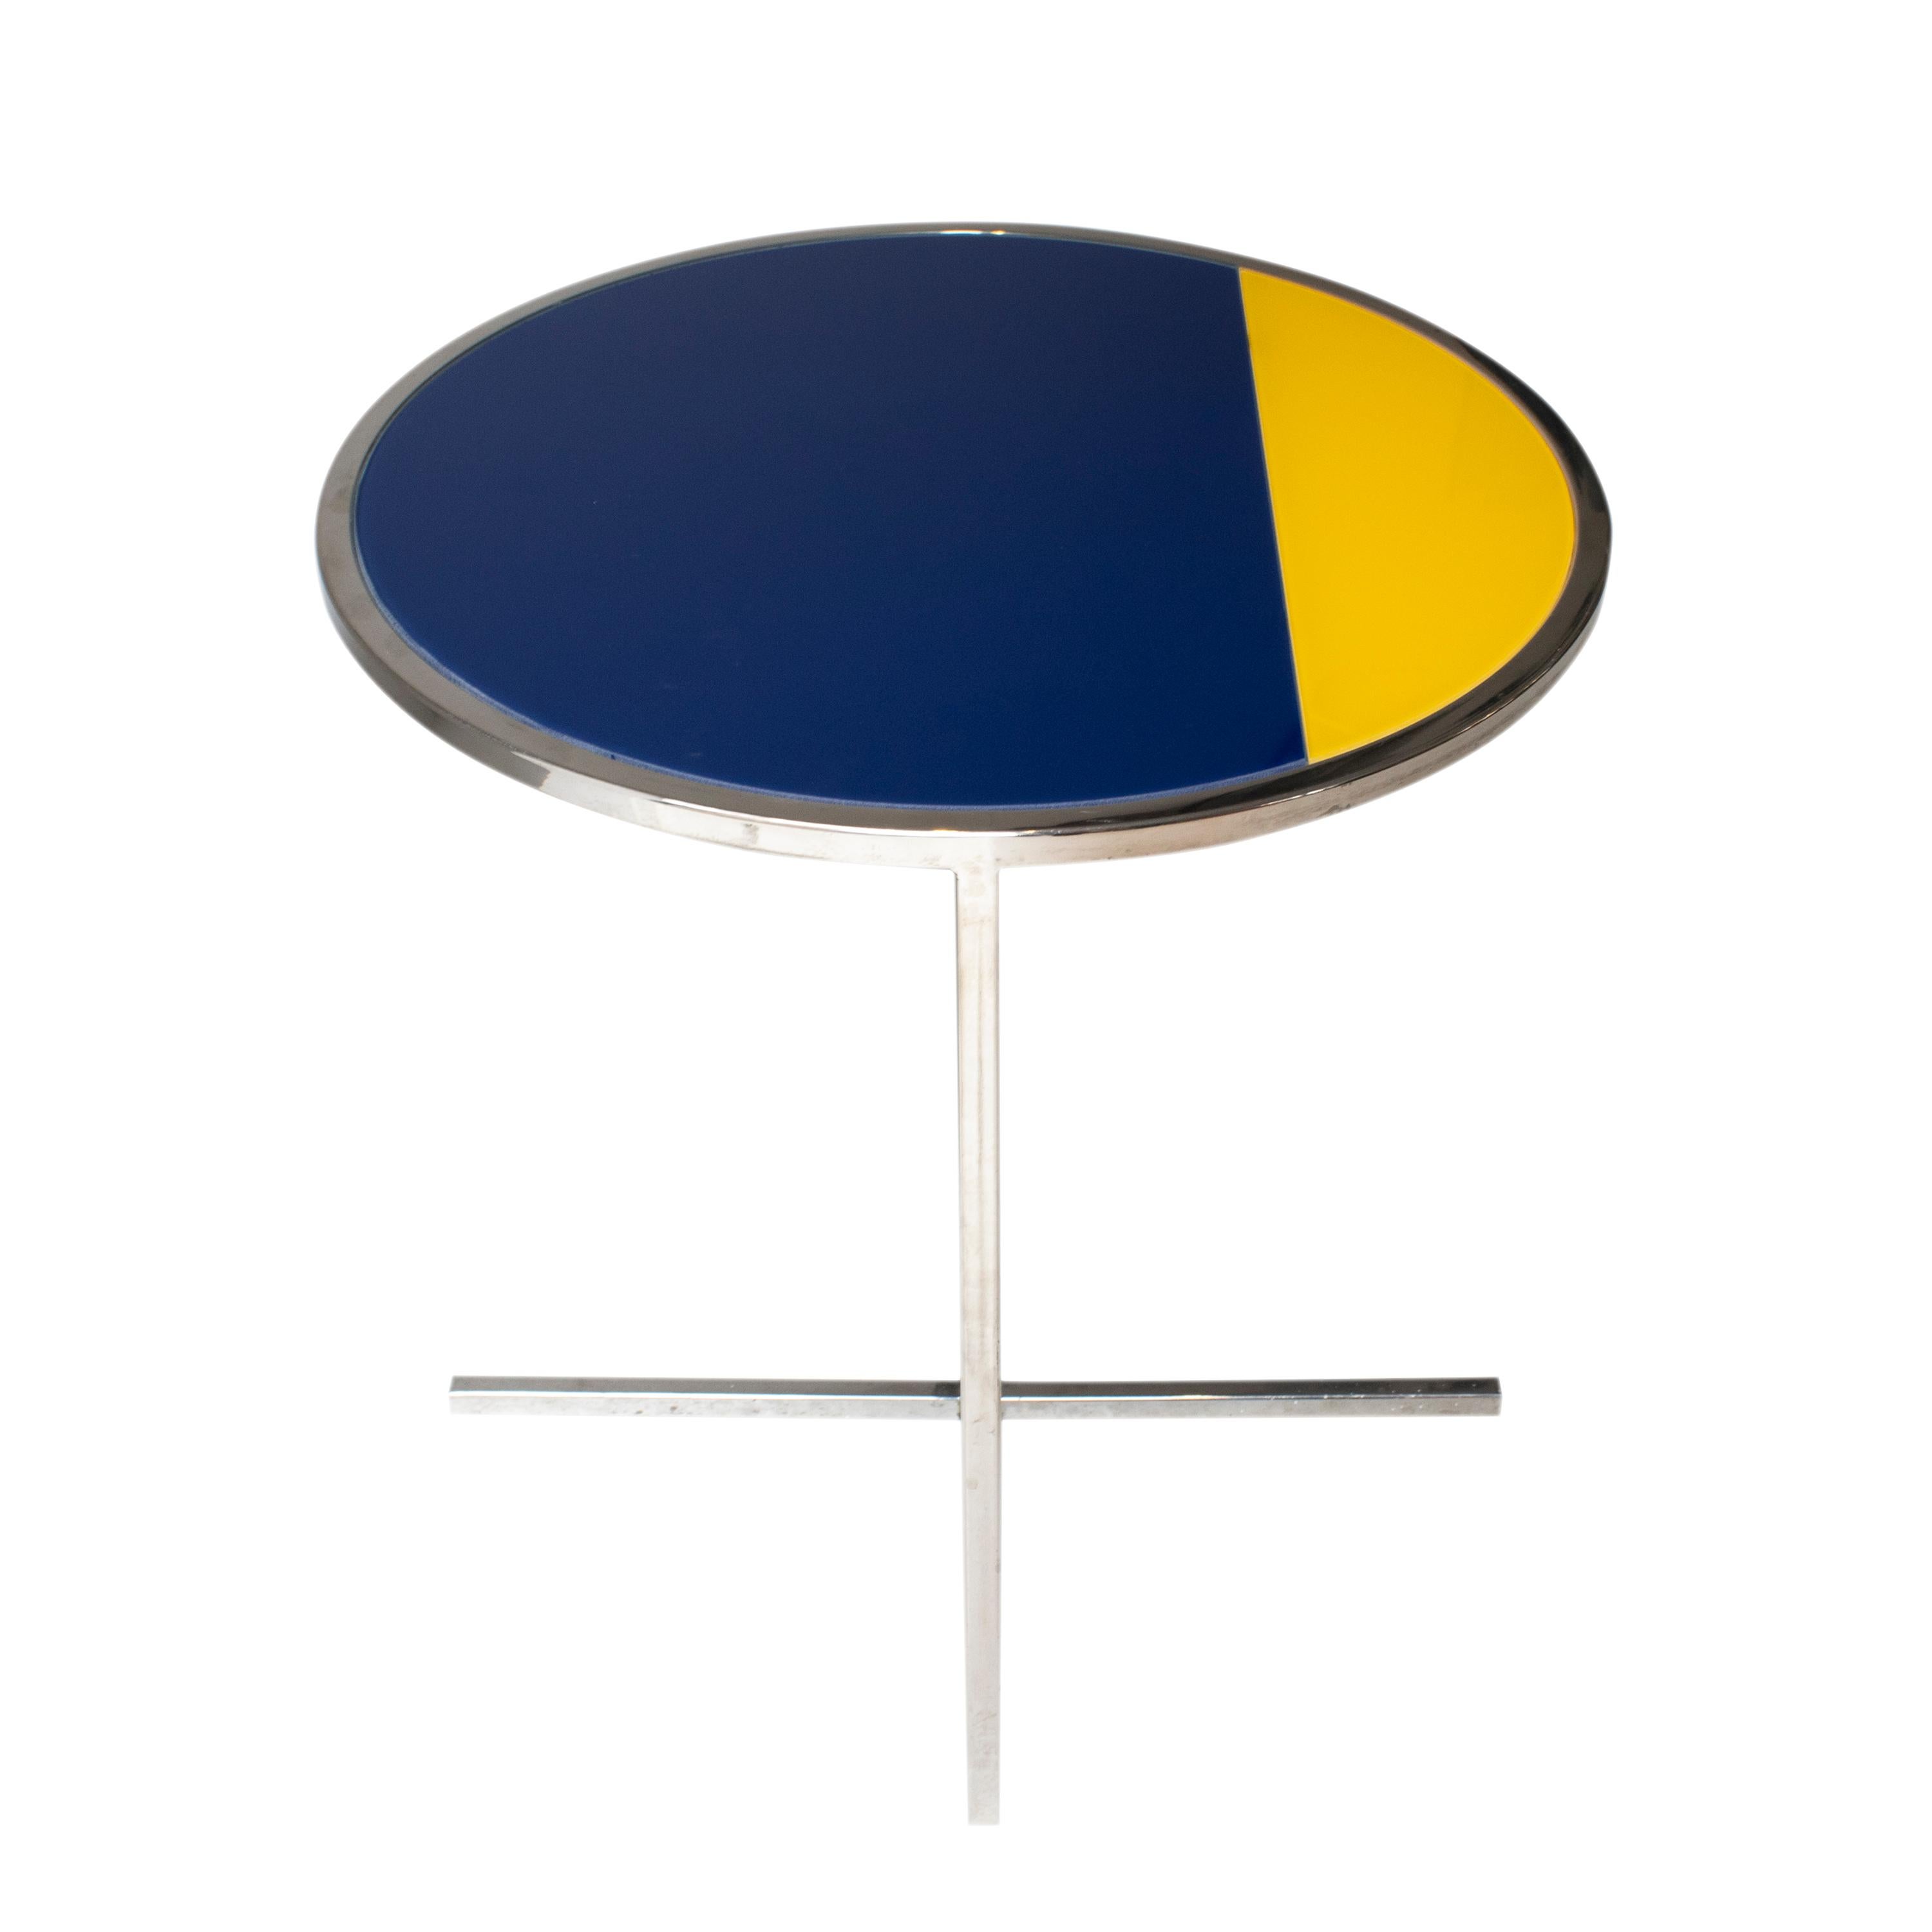 Table d'appoint originale des années 1970 avec une structure en acier chromé et un plateau en verre actuel dessiné par IKB191 en bleu et jaune.